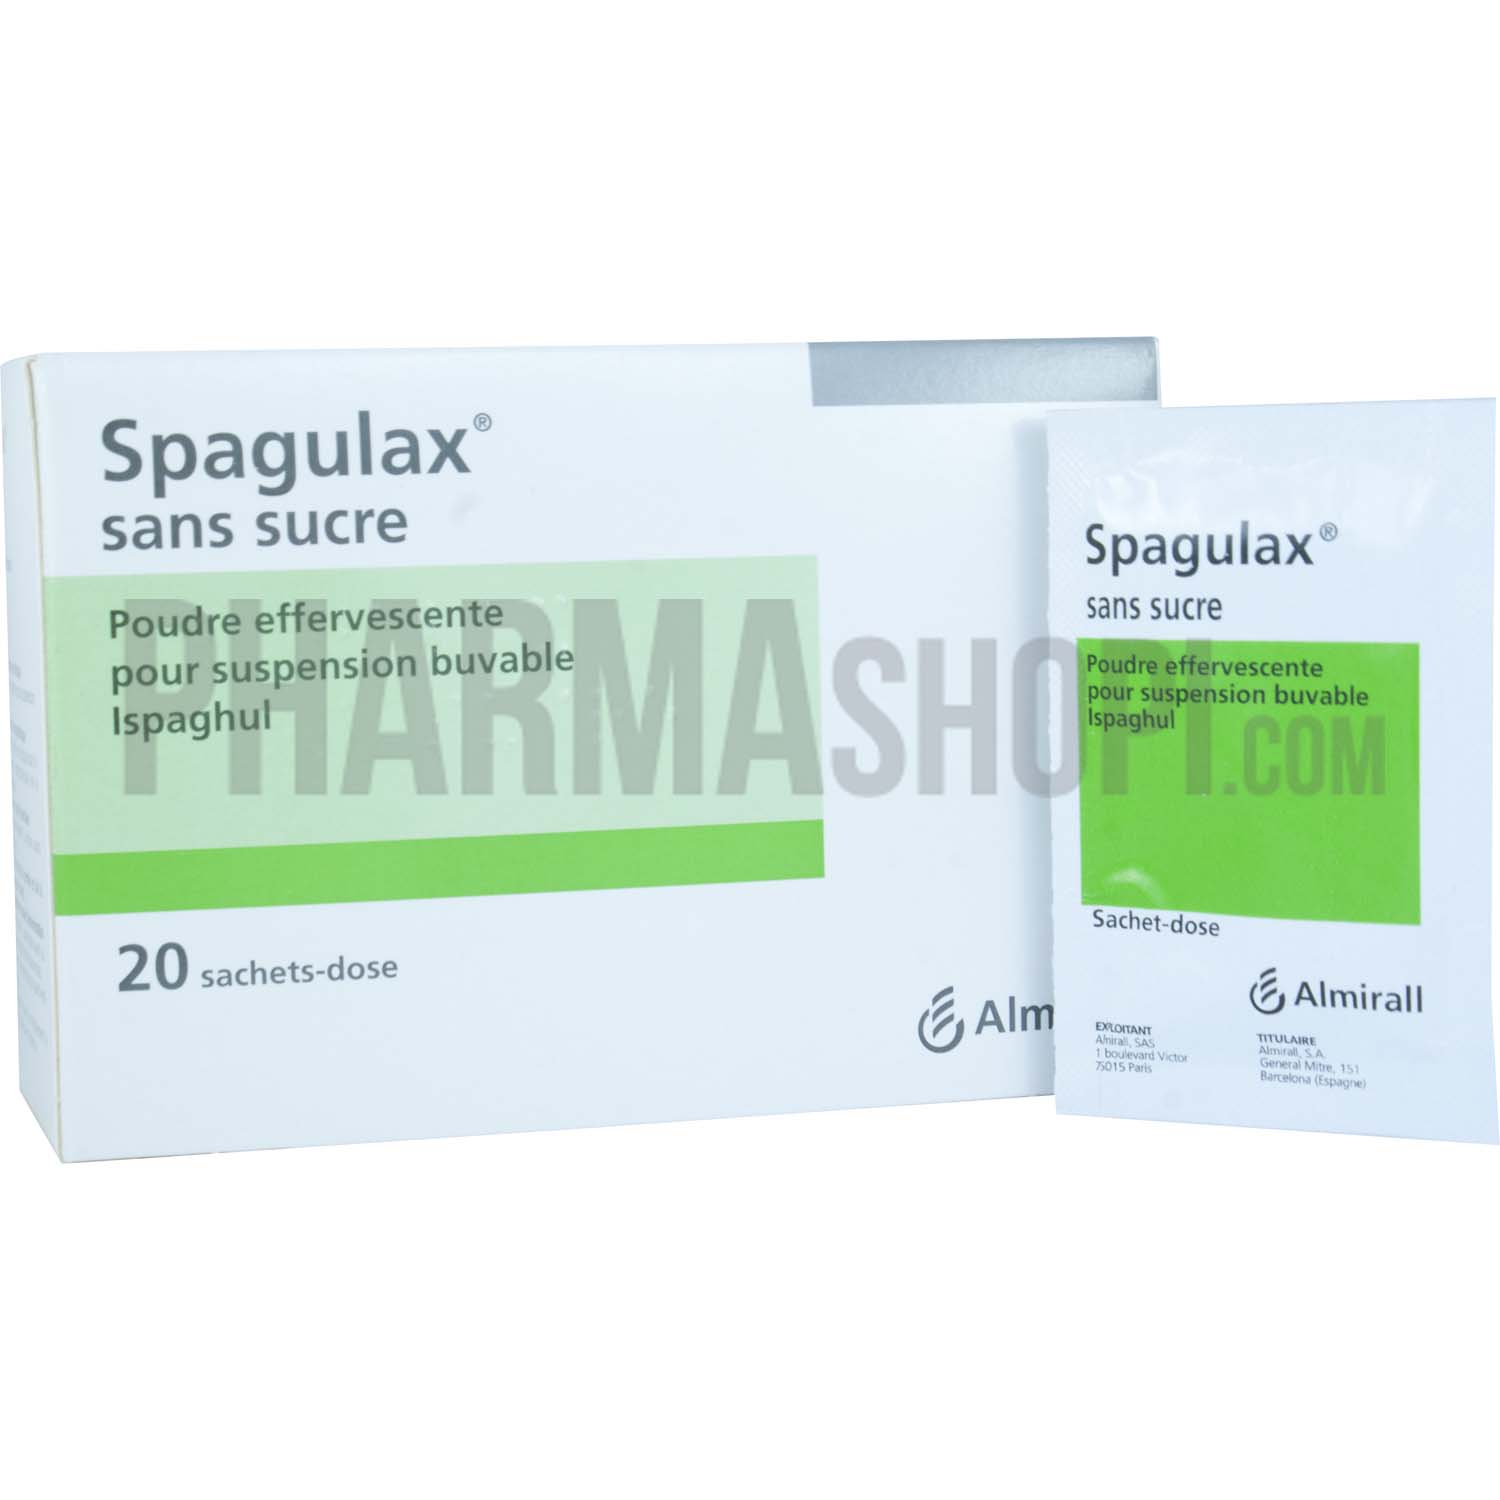 Spagulax sans sucre poudre effervescente pour suspension buvable - 20 sachet-doses